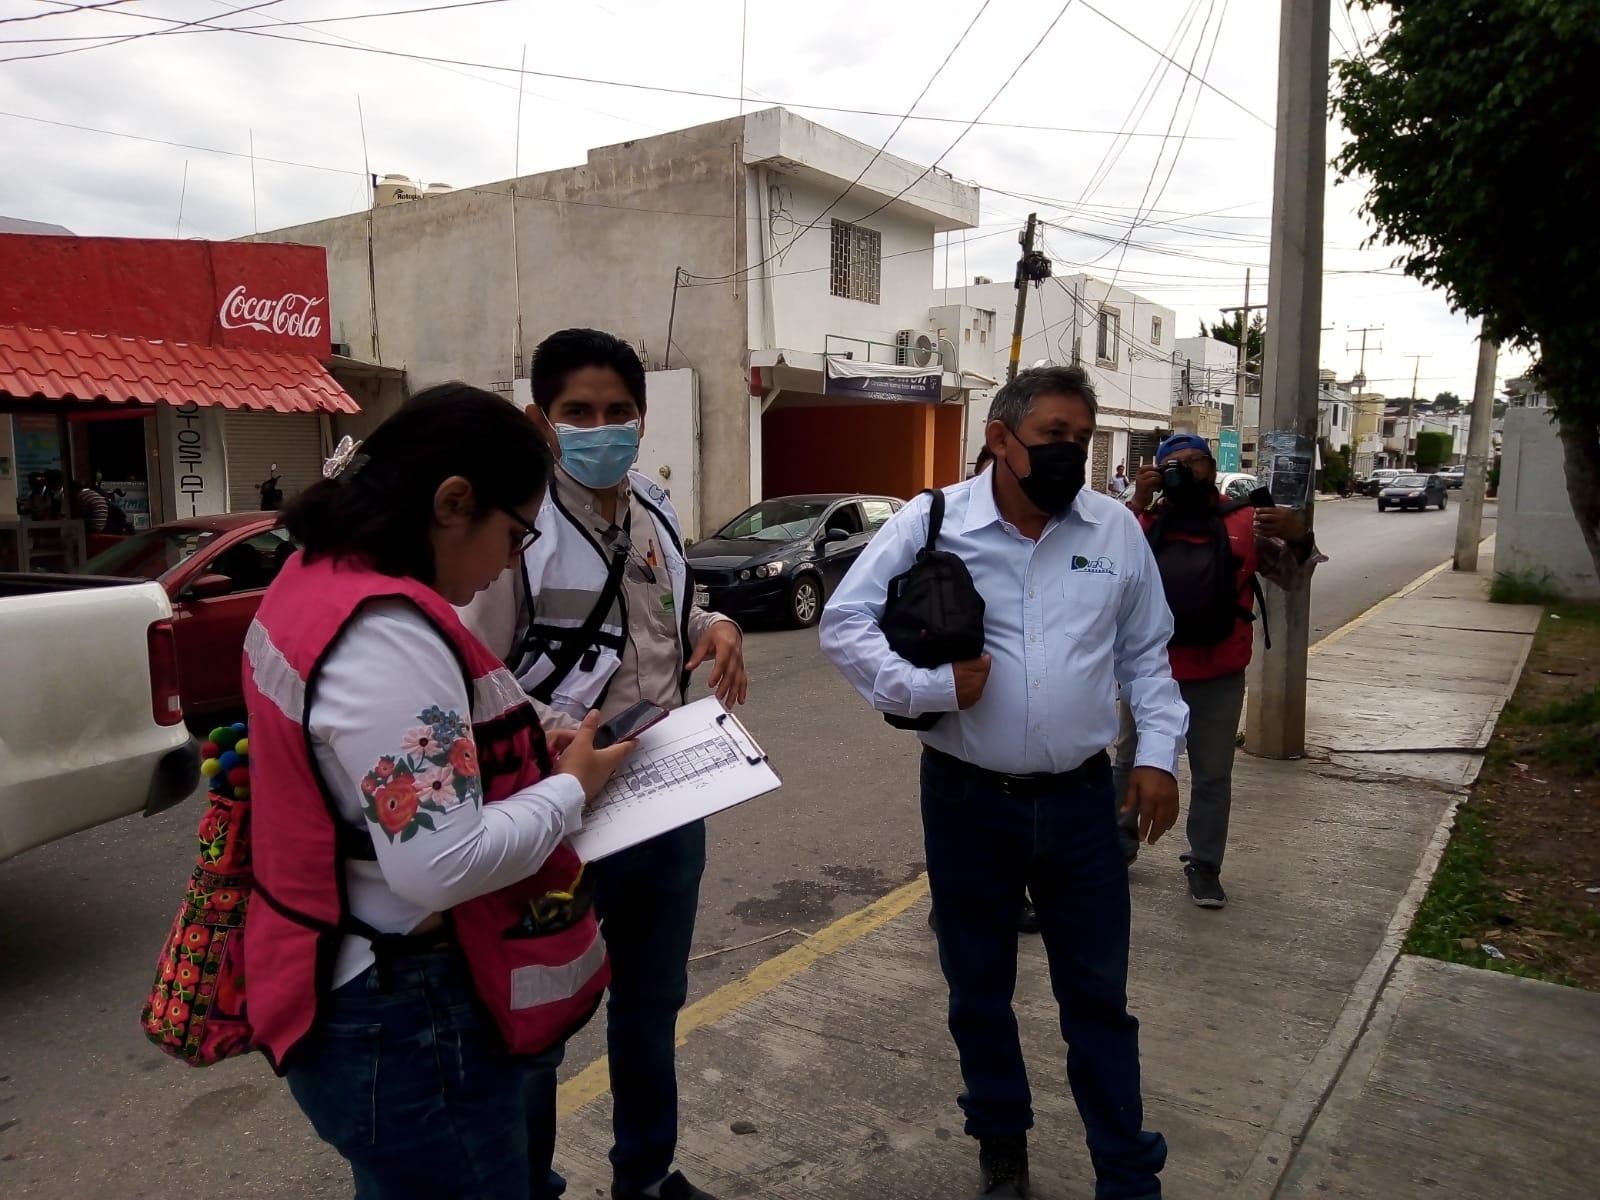 Conflicto en el CBTIS 9 en Campeche impide paso a personal del Inifeec: VIDEO